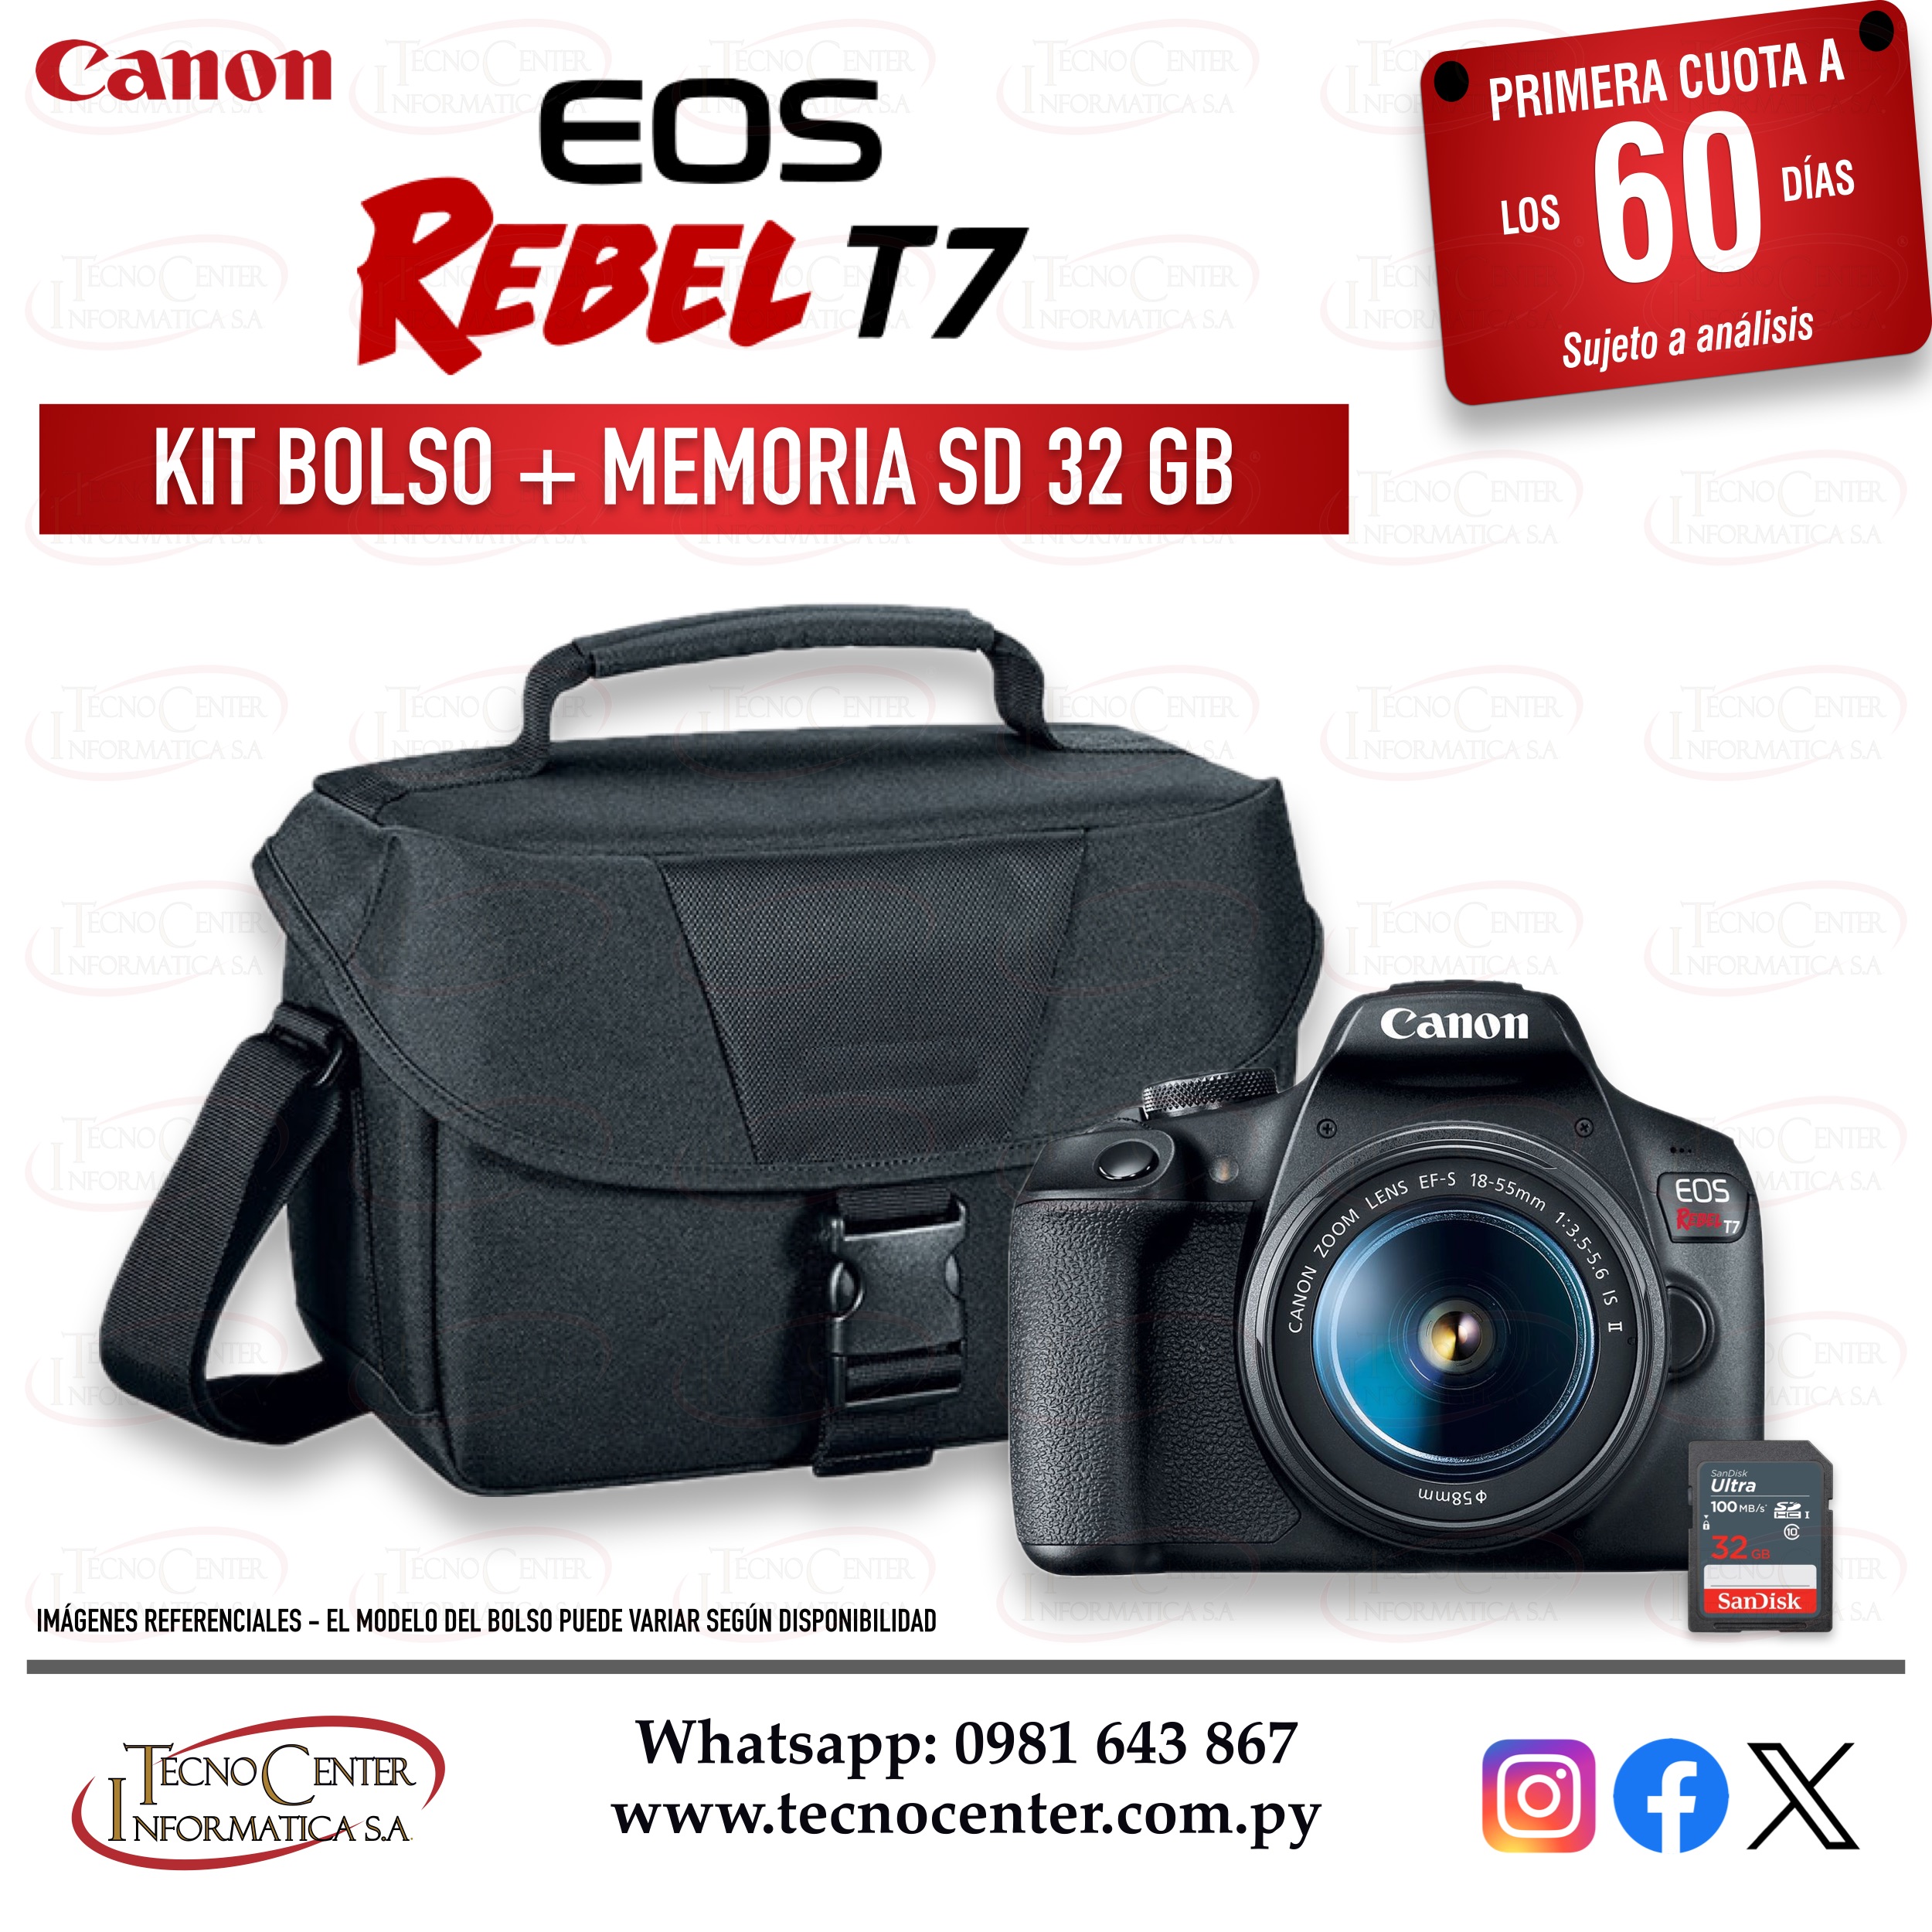 Cámara Canon EOS Rebel T7 Kit Bolso + Memoria SD